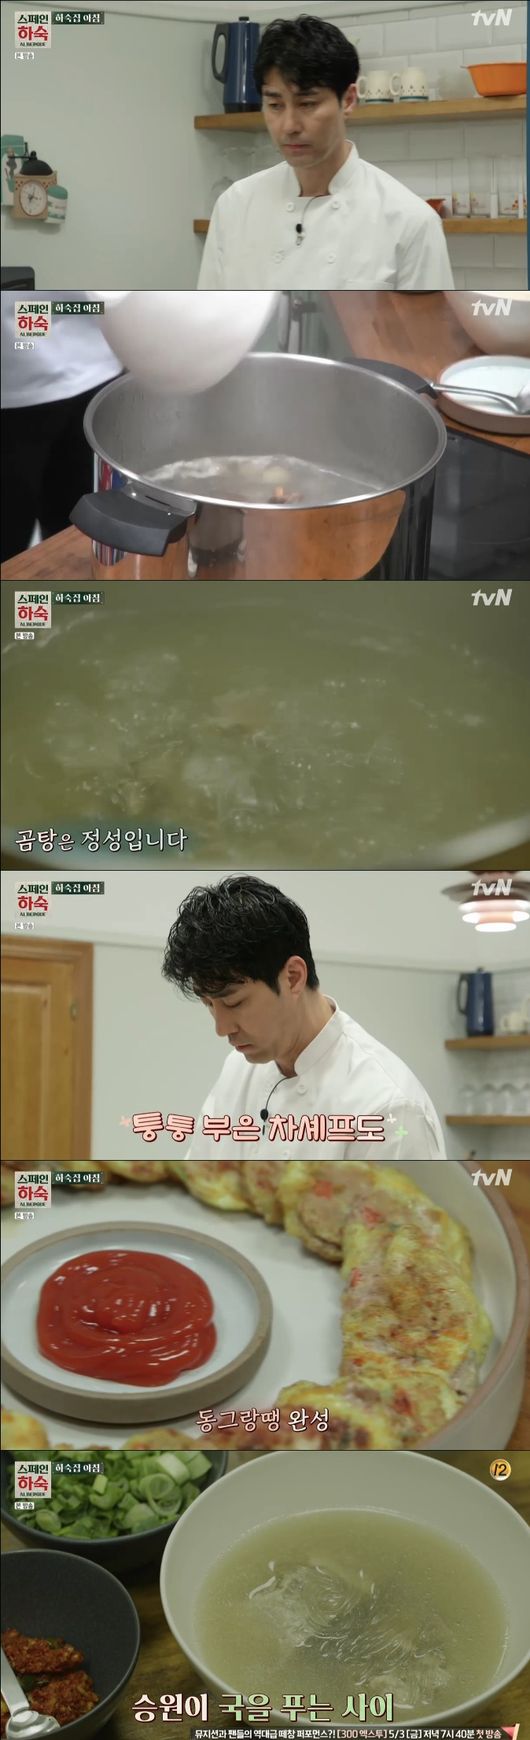 [사진] tvN '스페인 하숙' 차승원 꼬리곰탕과 동그랑땡